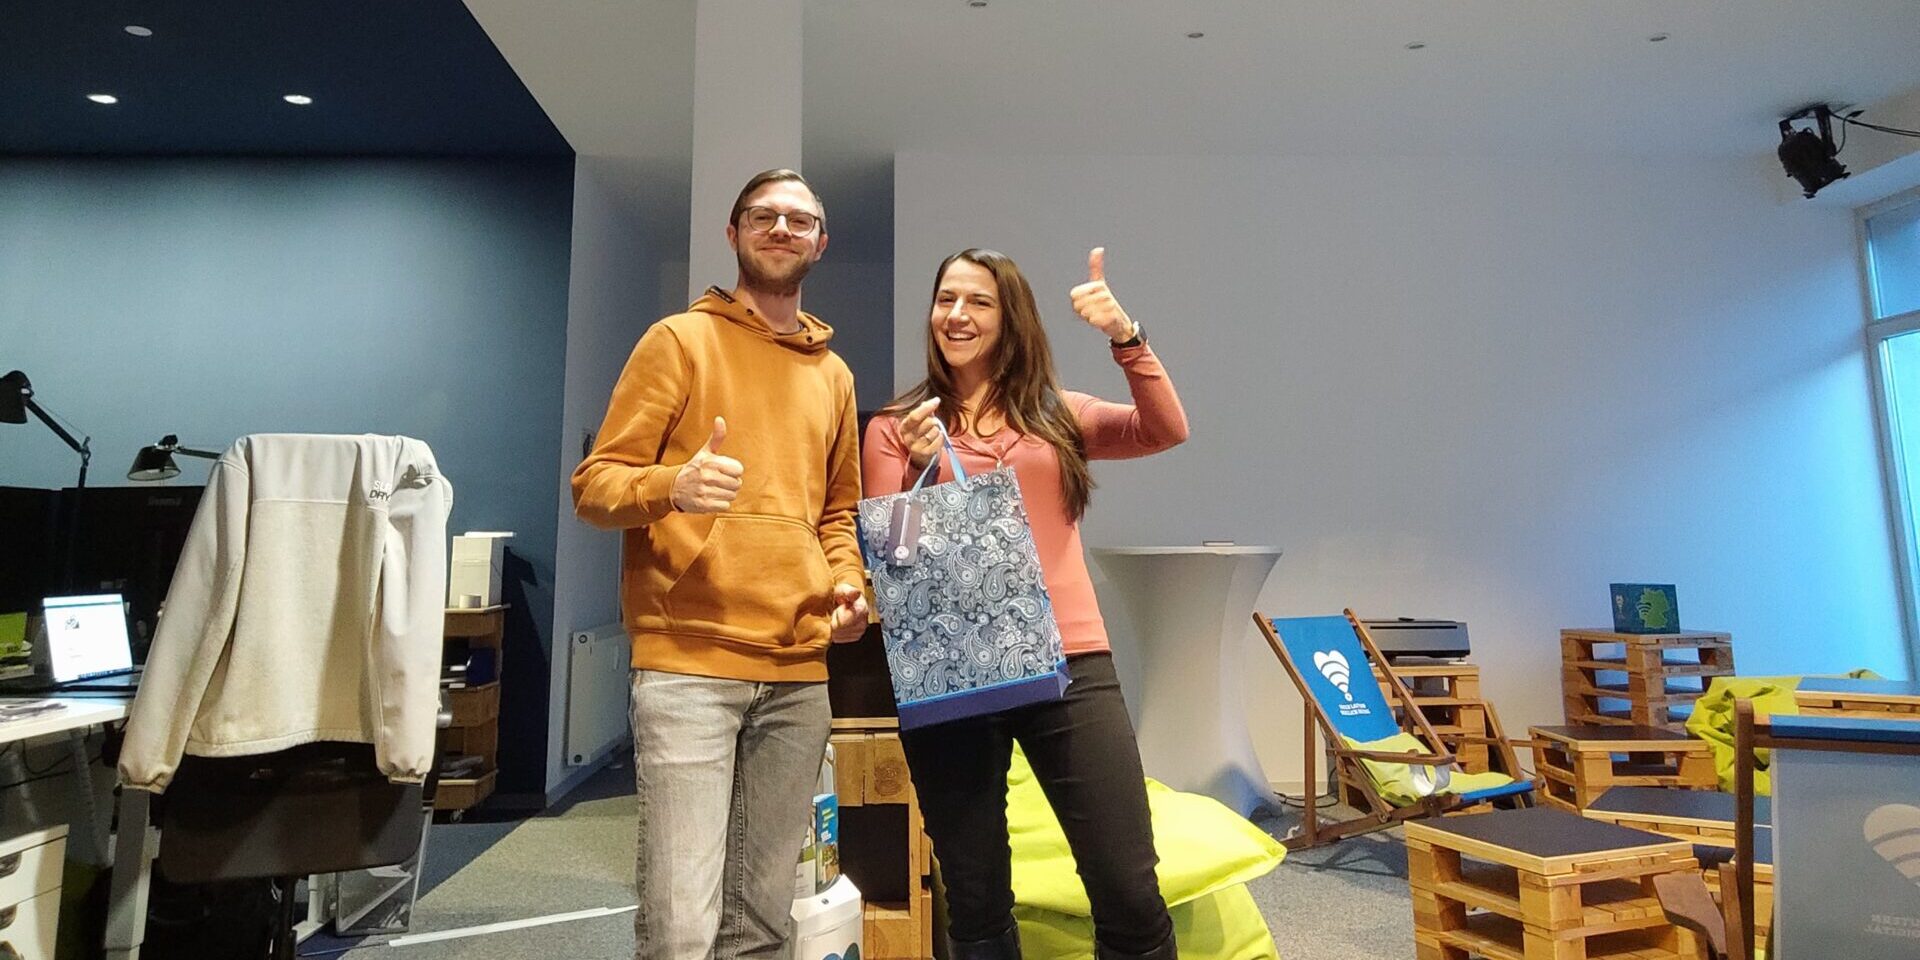 Ein Mann und eine Frau stehen in einem Raum. Sie hat beim Gewinnspiel der Beteiligungsplattform gewonnen und posiert mit einer Geschenktüte.